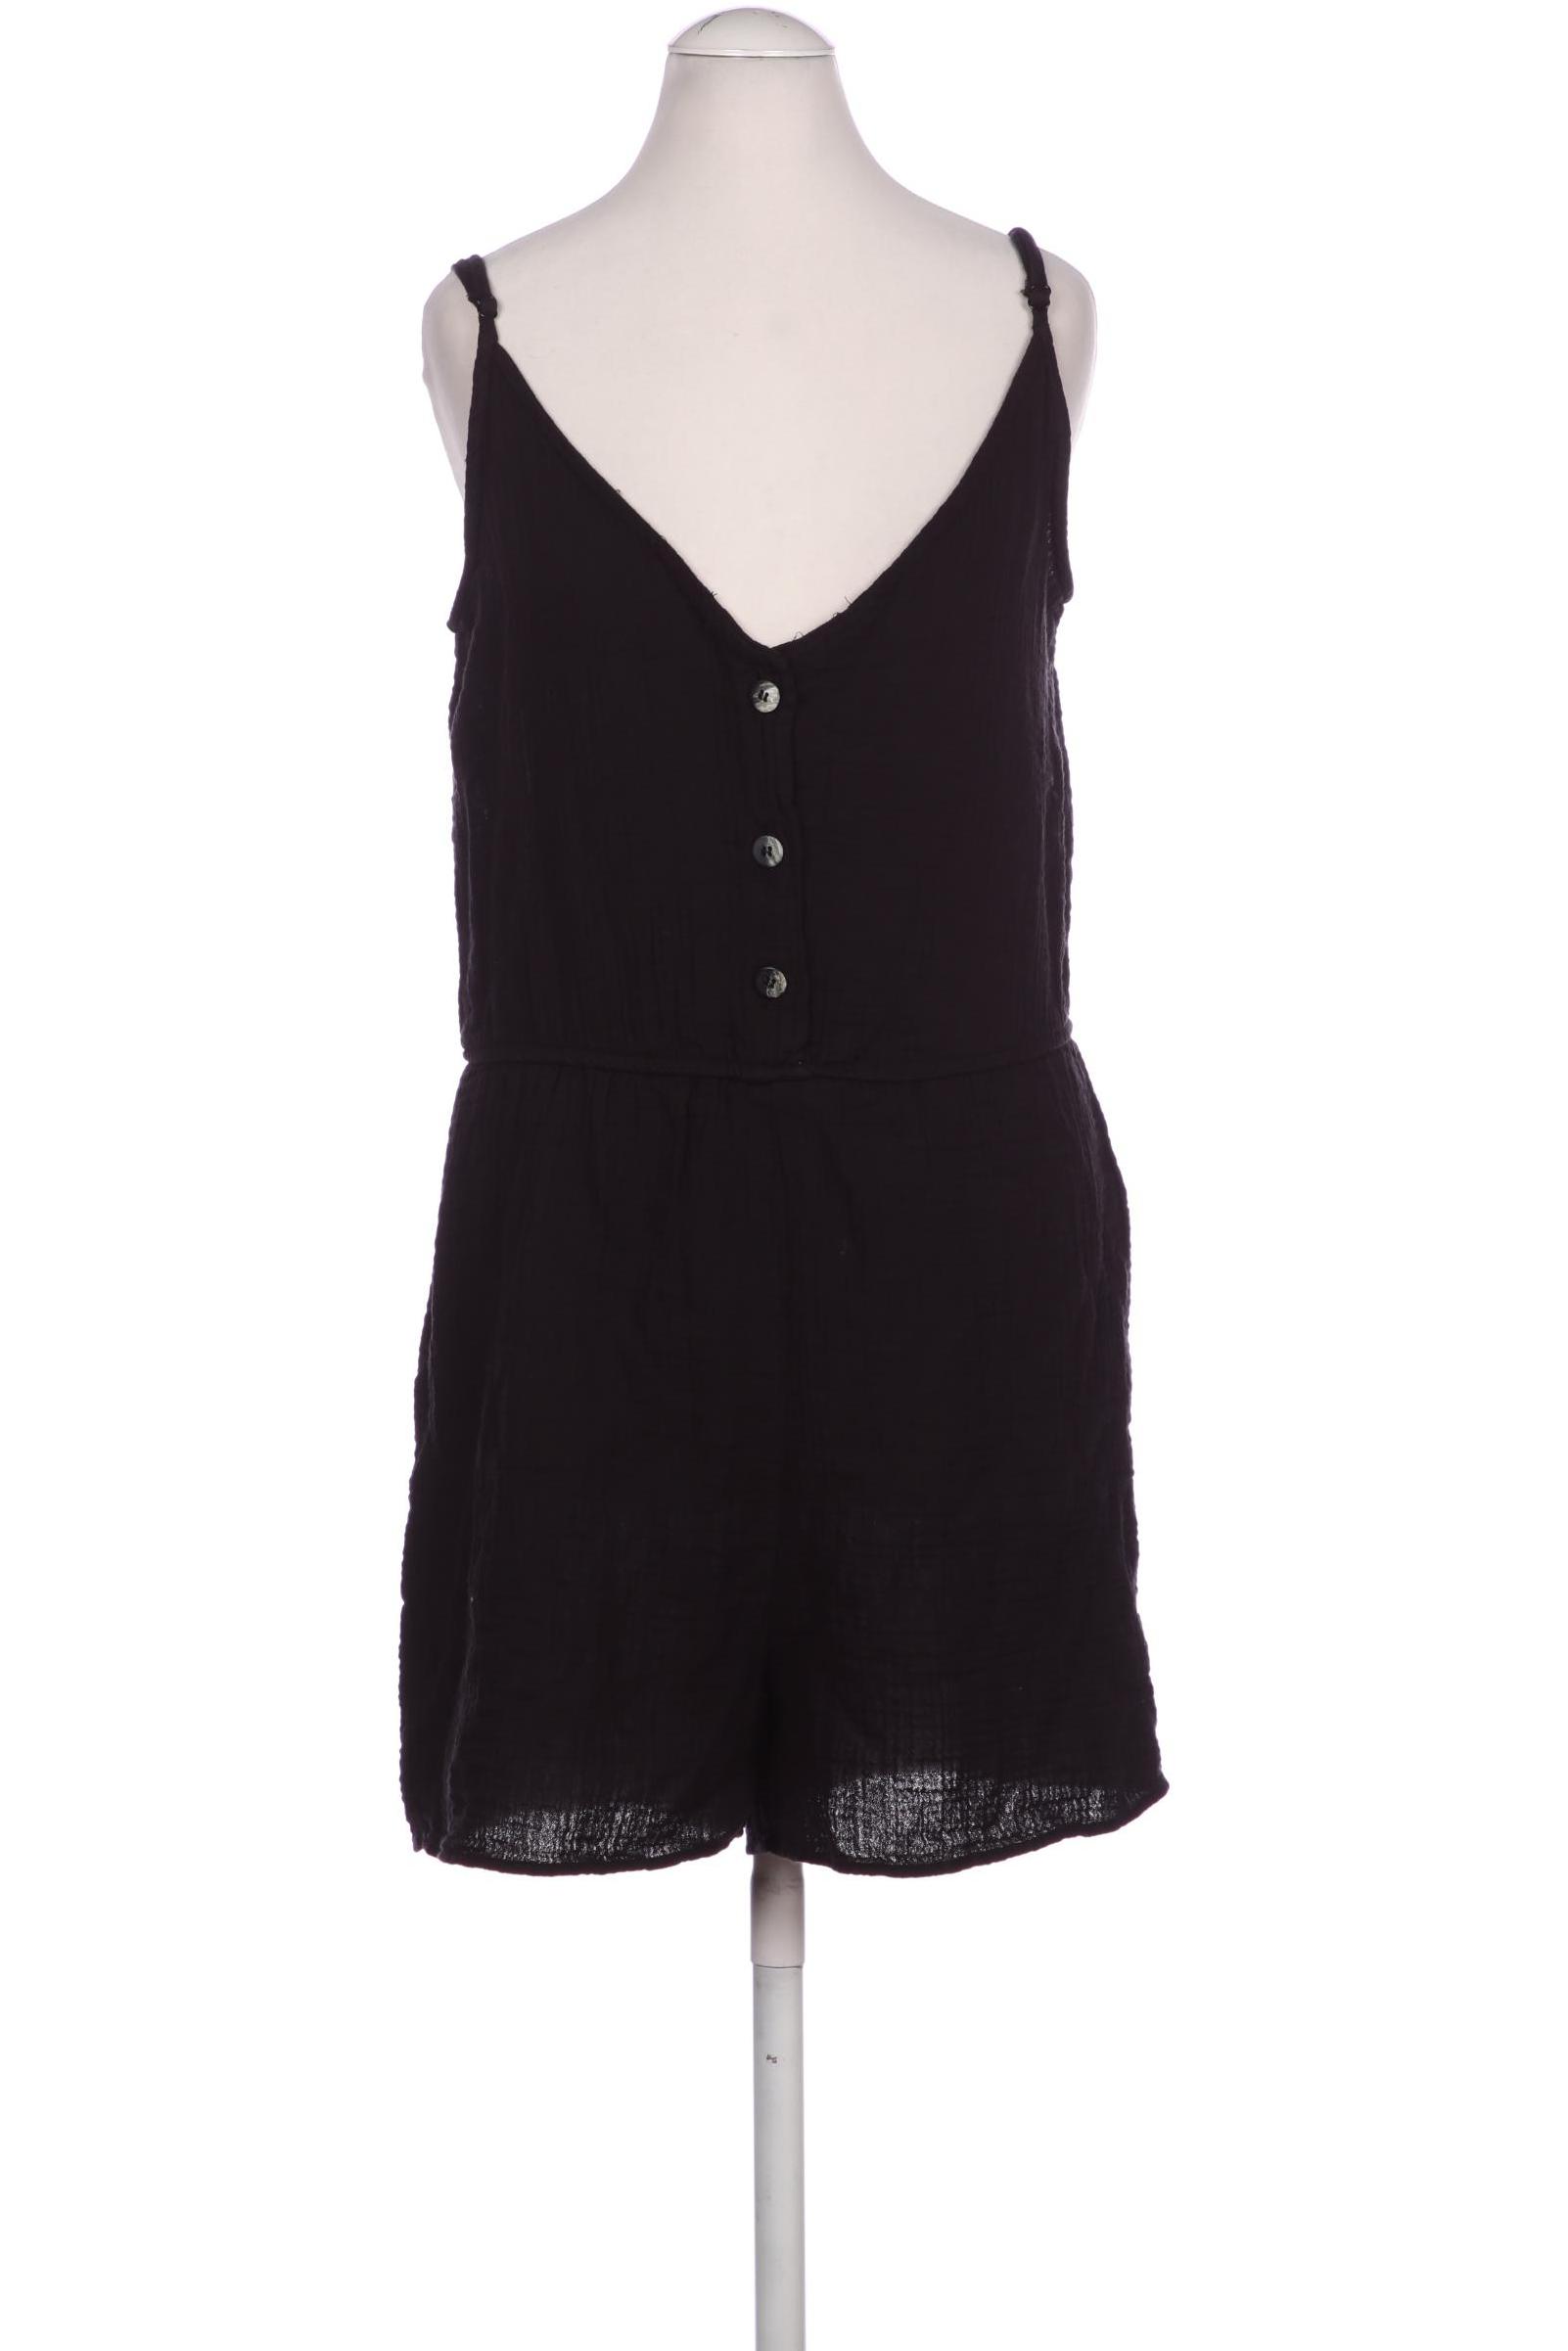 Zara Damen Jumpsuit/Overall, schwarz, Gr. 34 von ZARA